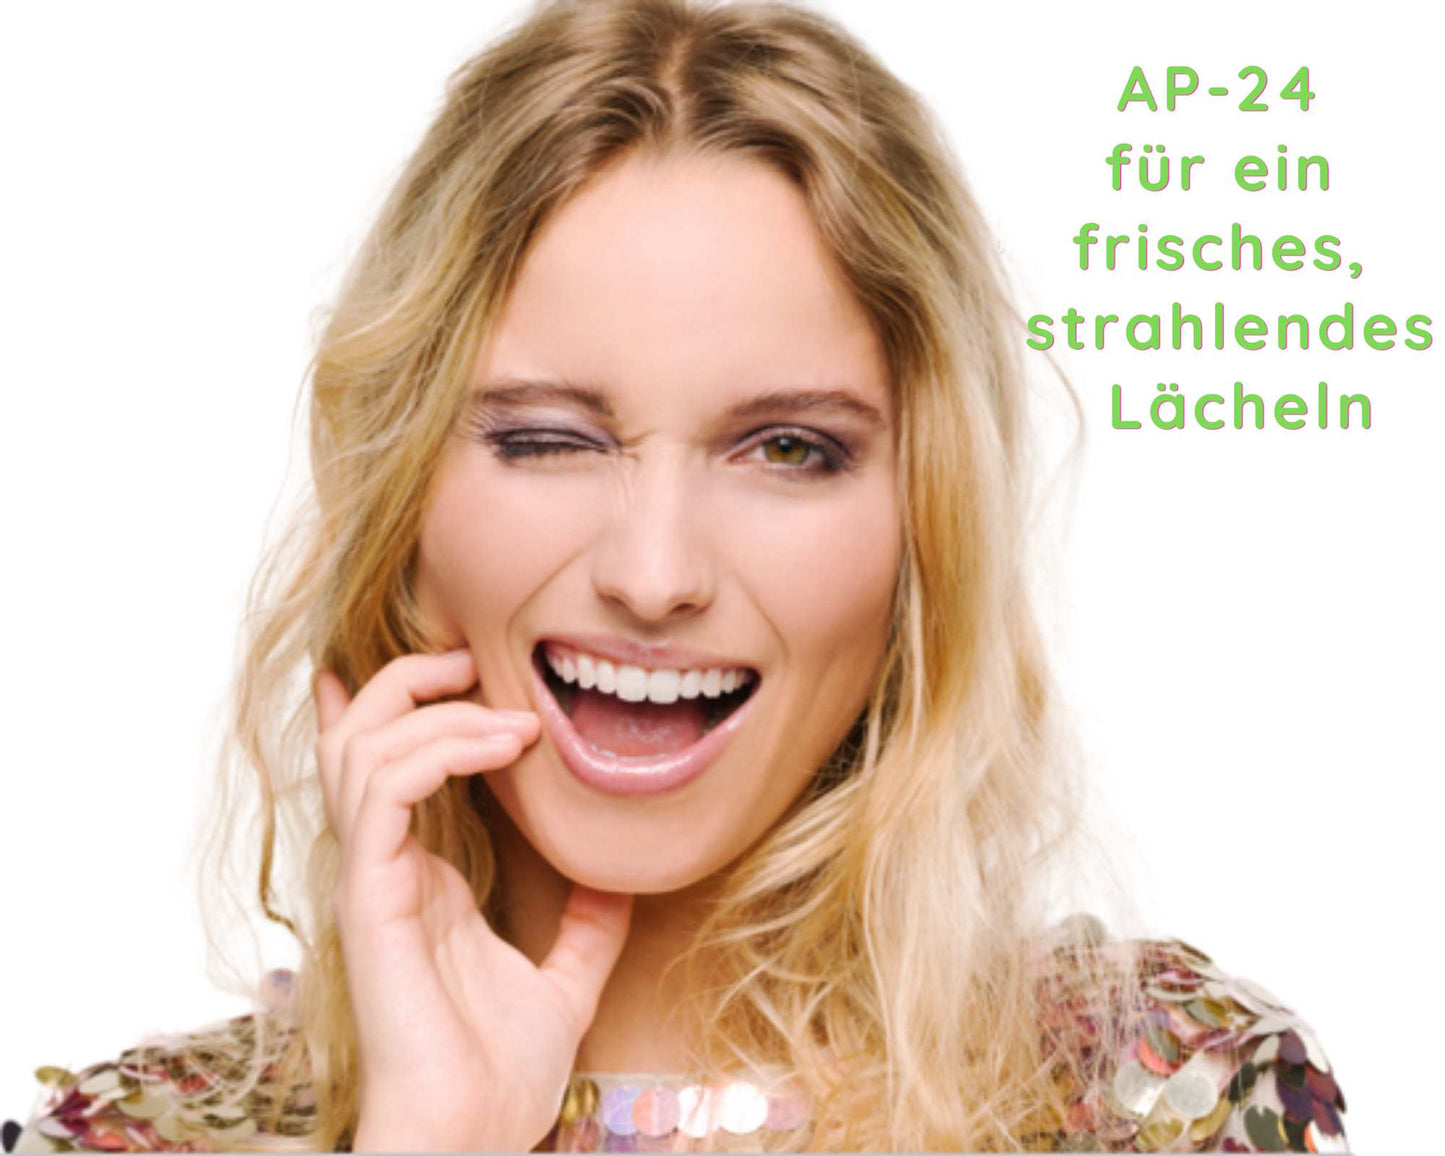 Mujer con bonitos dientes blancos - Ap-24 para una sonrisa fresca y radiante